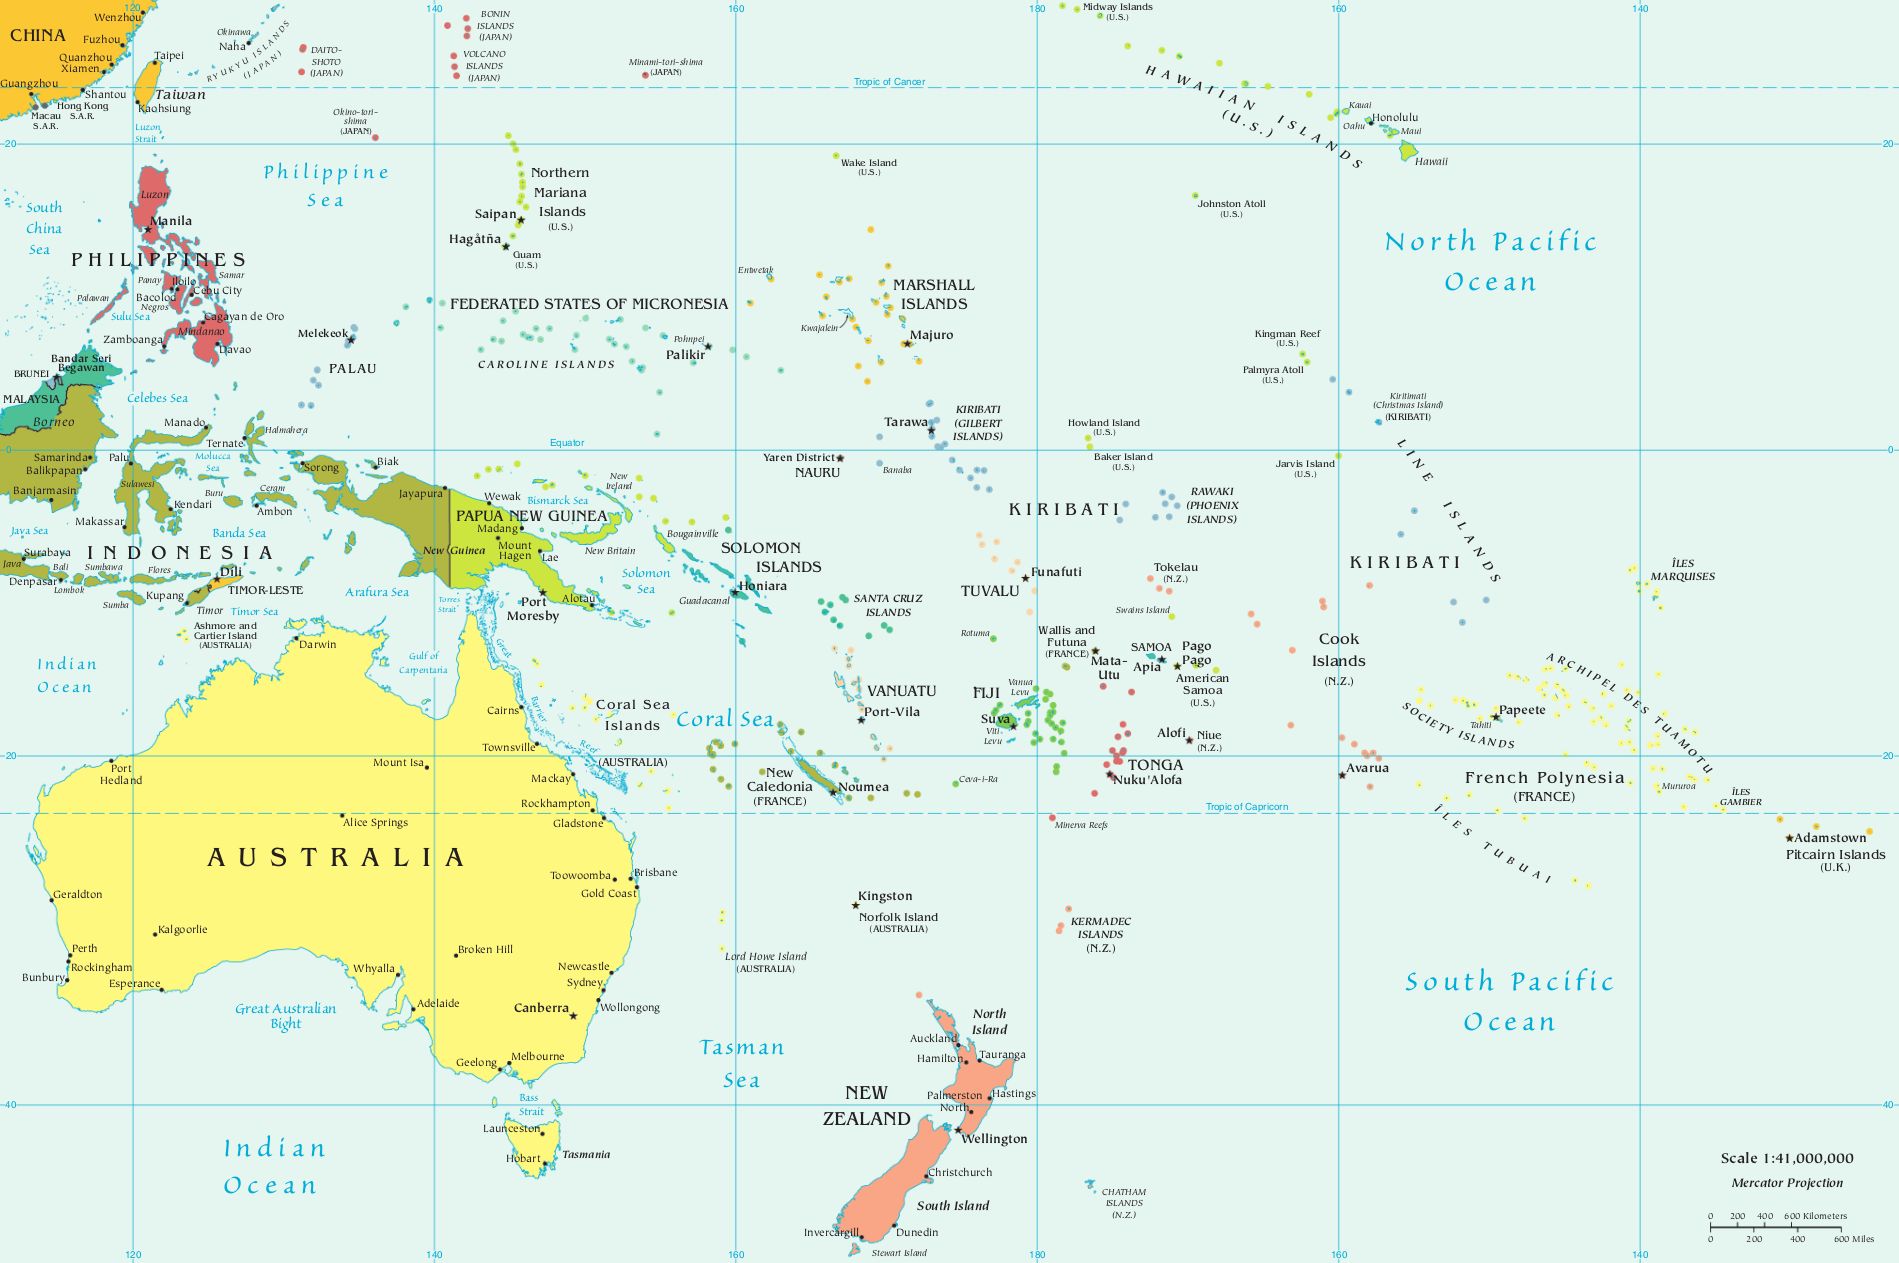 Austrália: geografia, economia, história, cultura - Brasil Escola